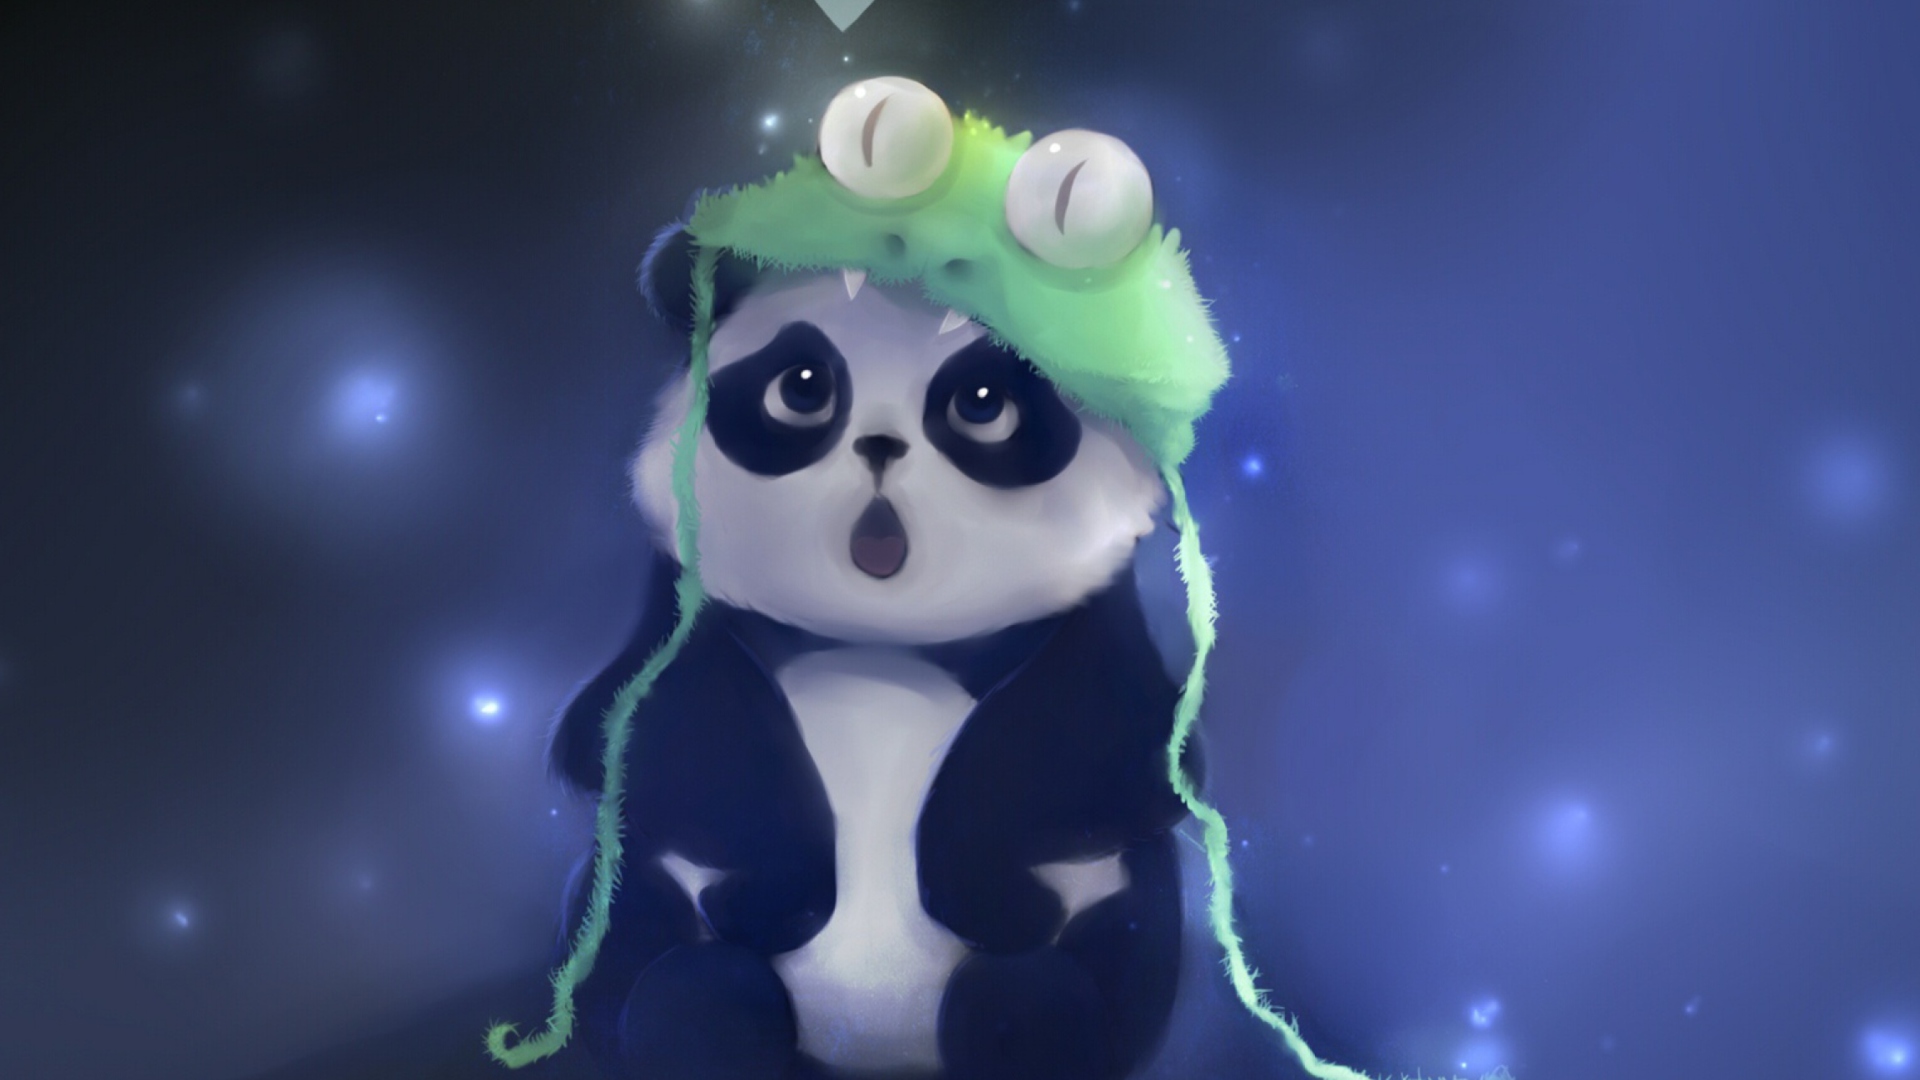 Cute Baby Panda Painting wallpaper 1920x1080